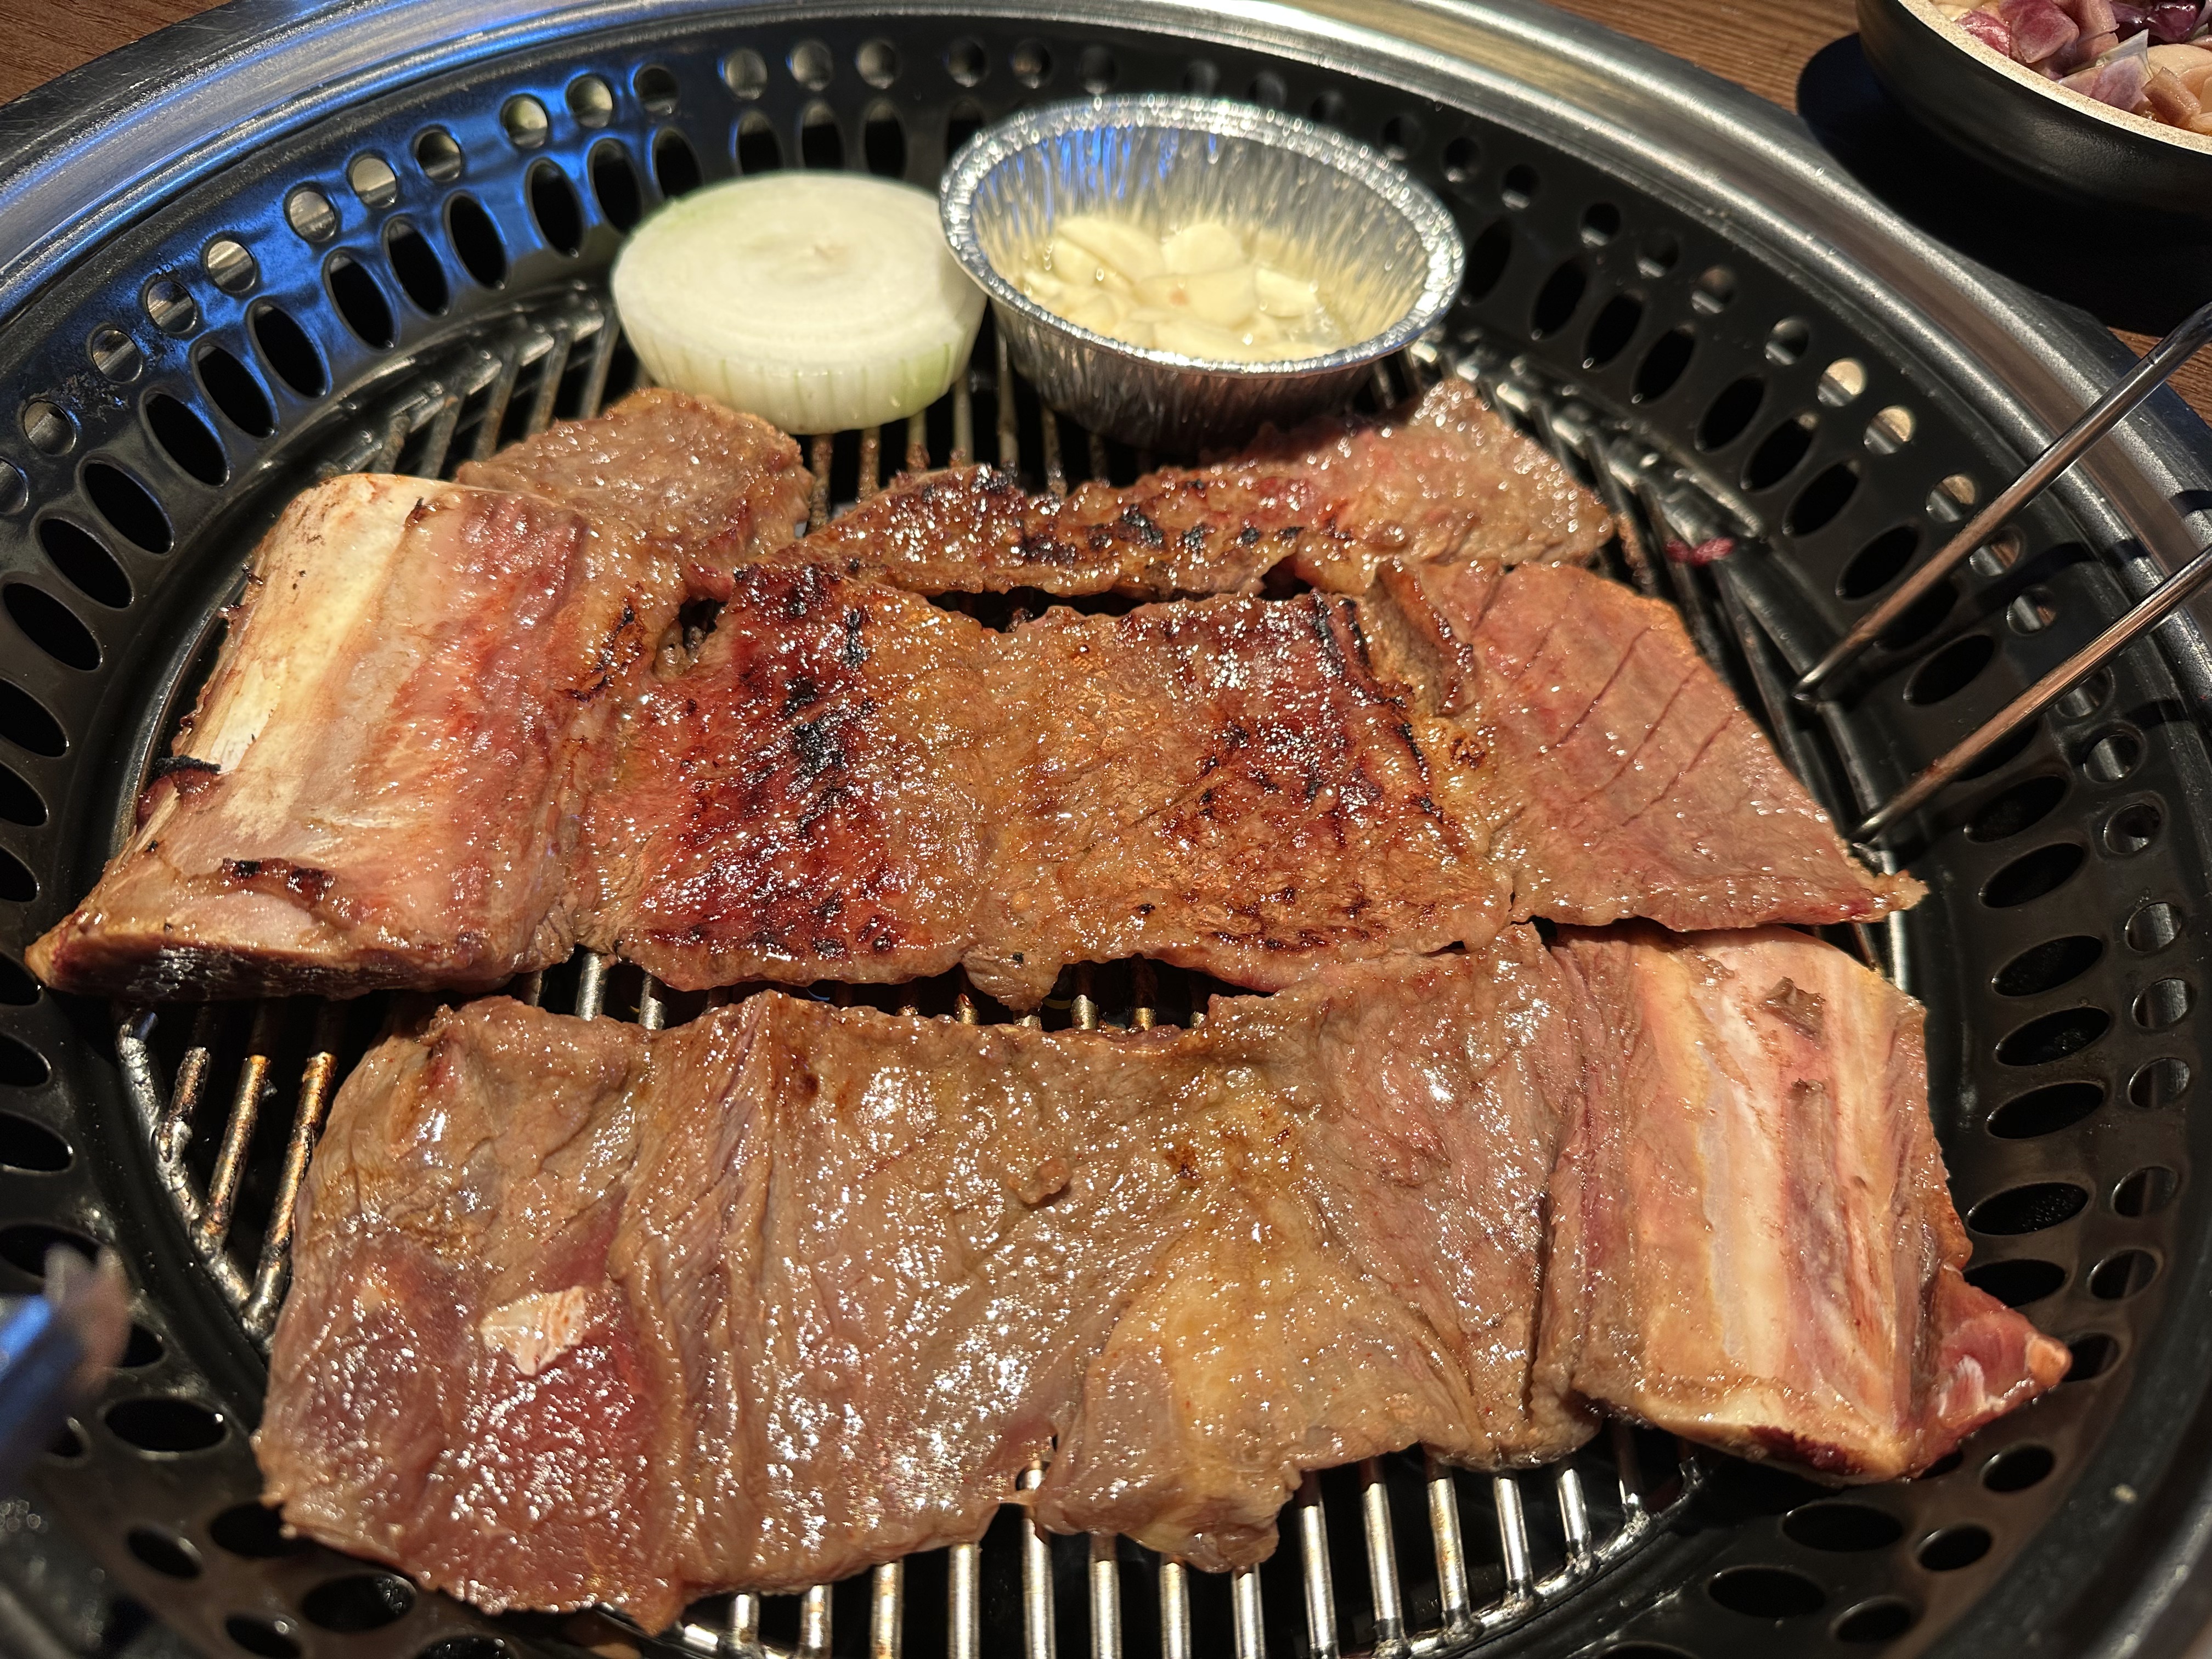 GOGI KOREAN BBQ & KARAOKE